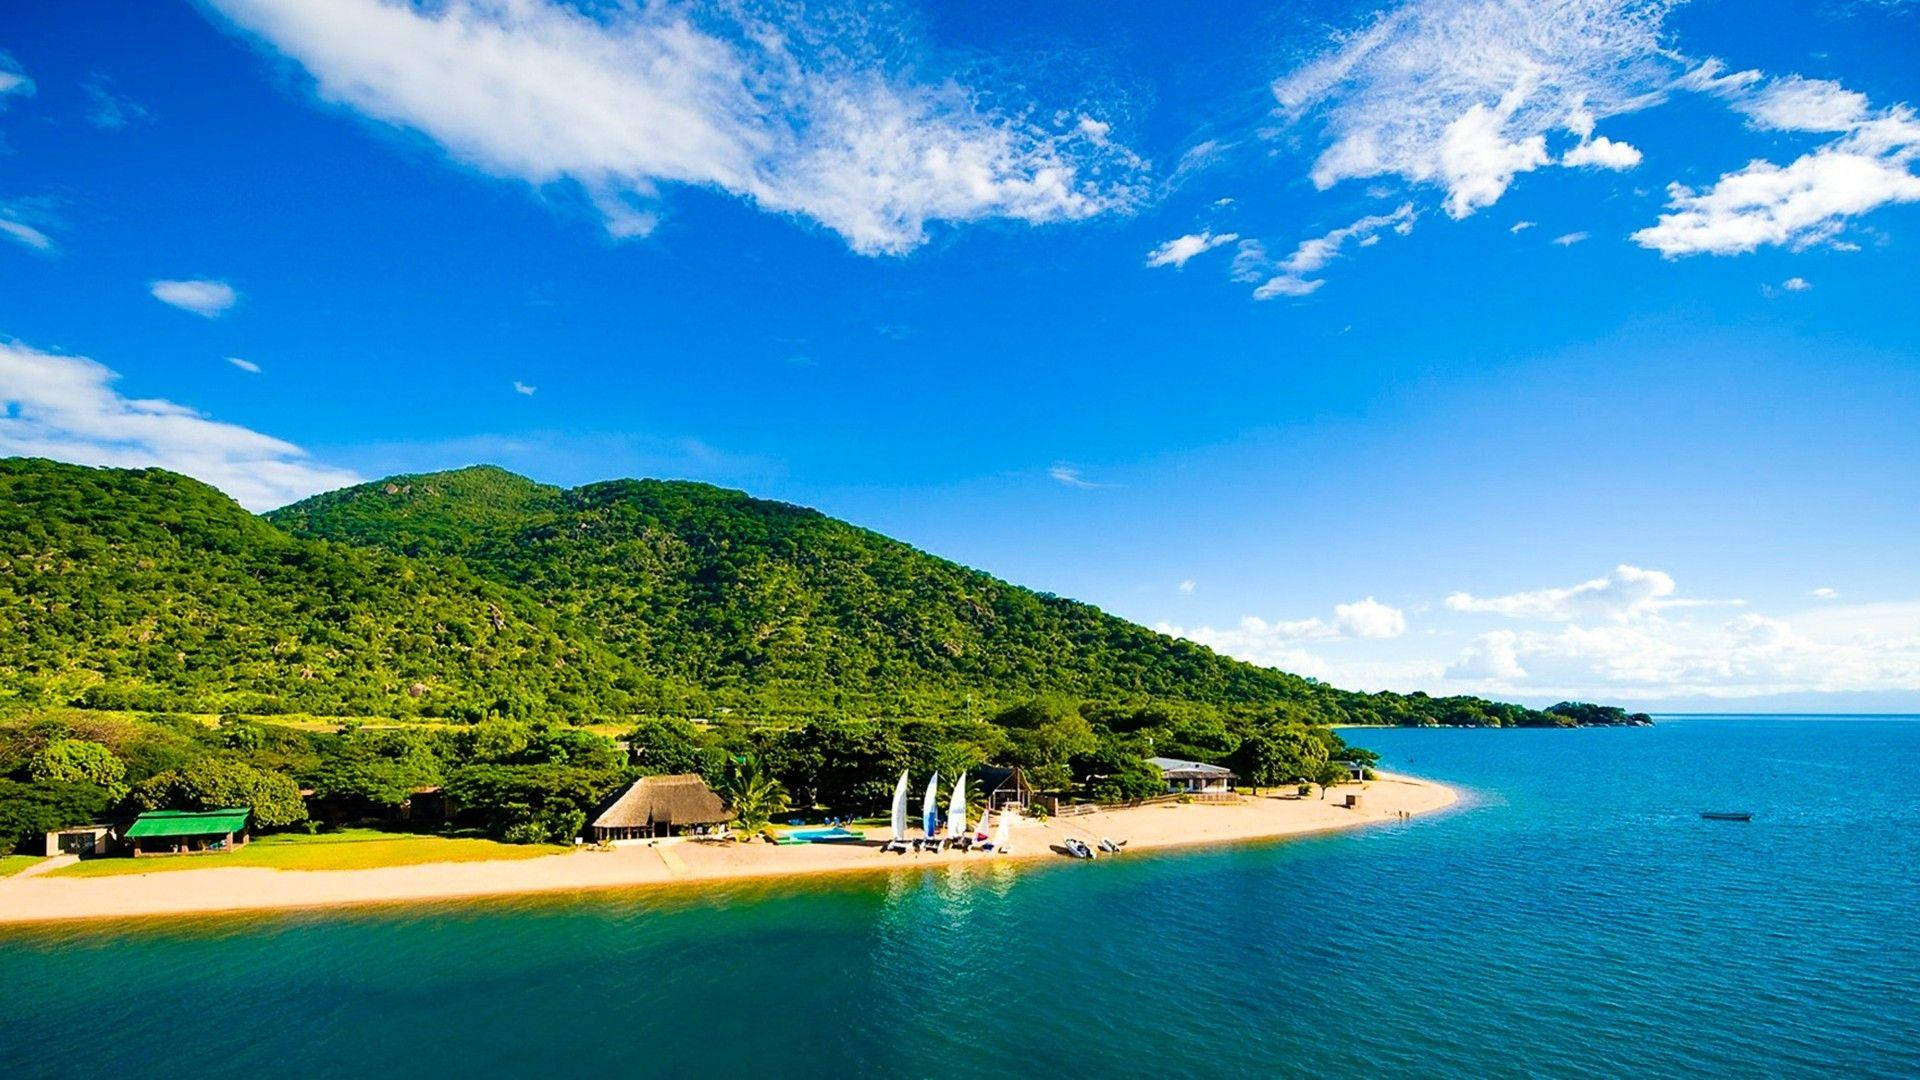 Mozambique Lake Malawi Background